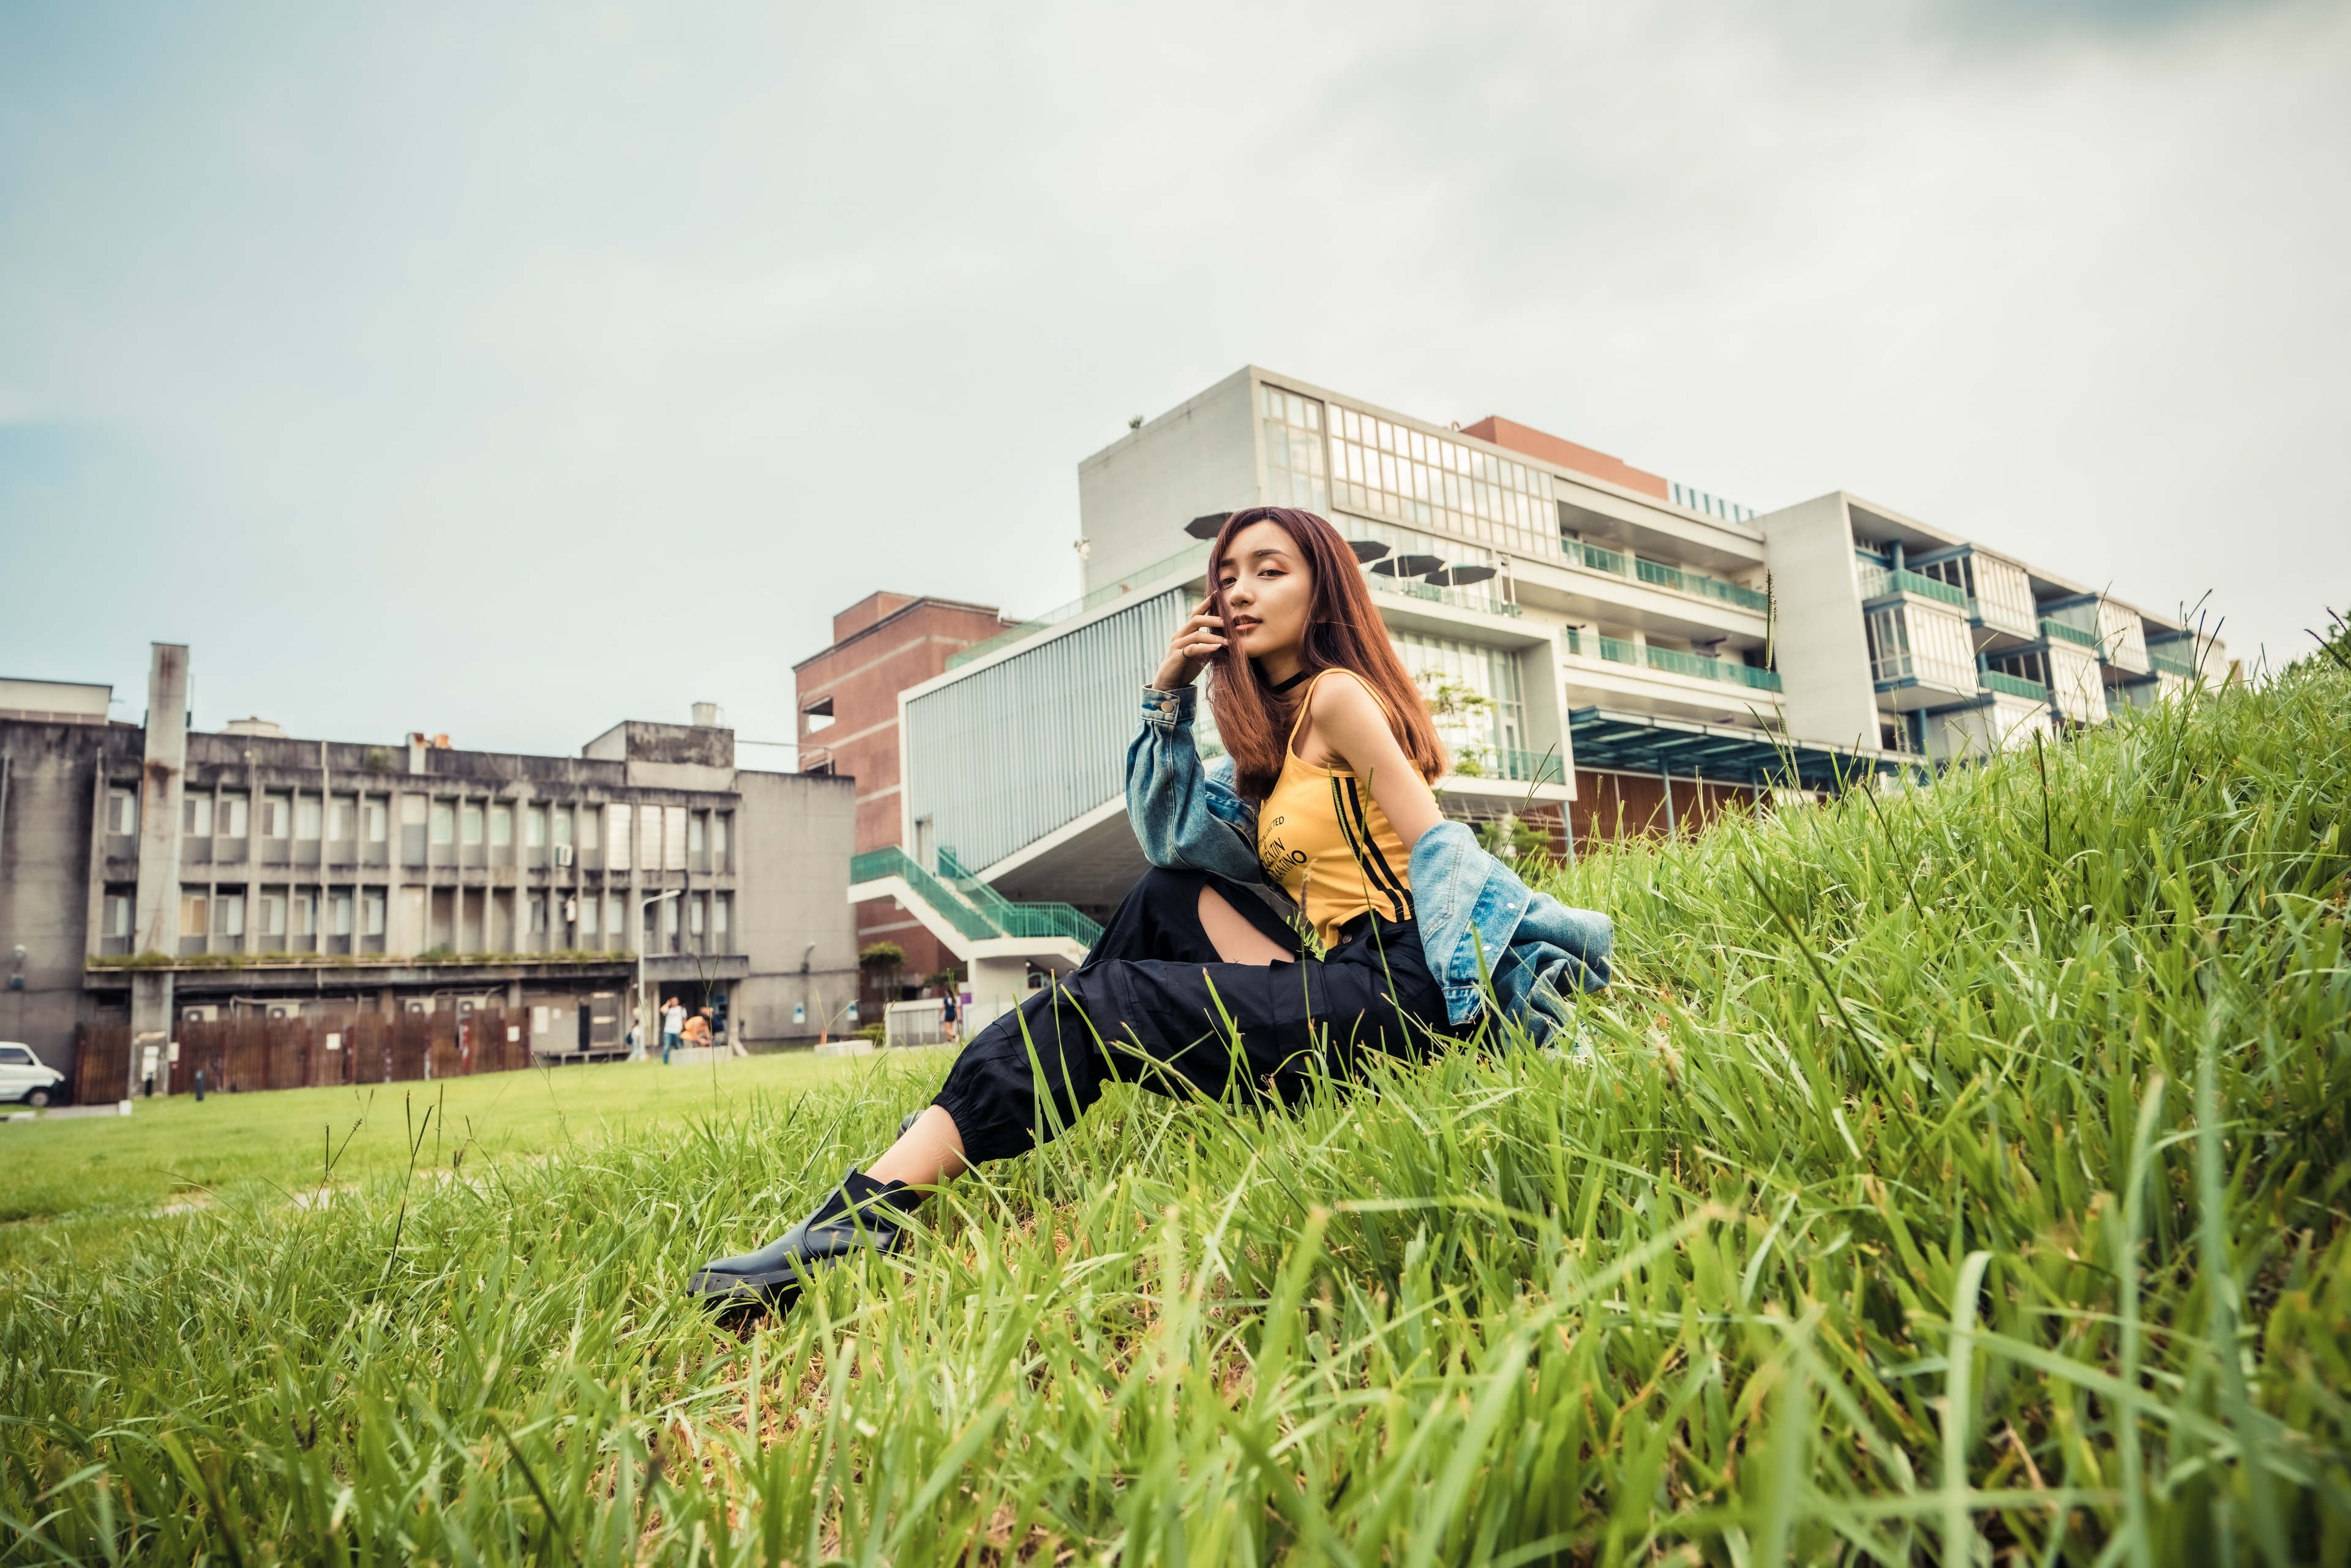 Фото обои азиатская девушка отдых трава - бесплатные картинки на Fonwall